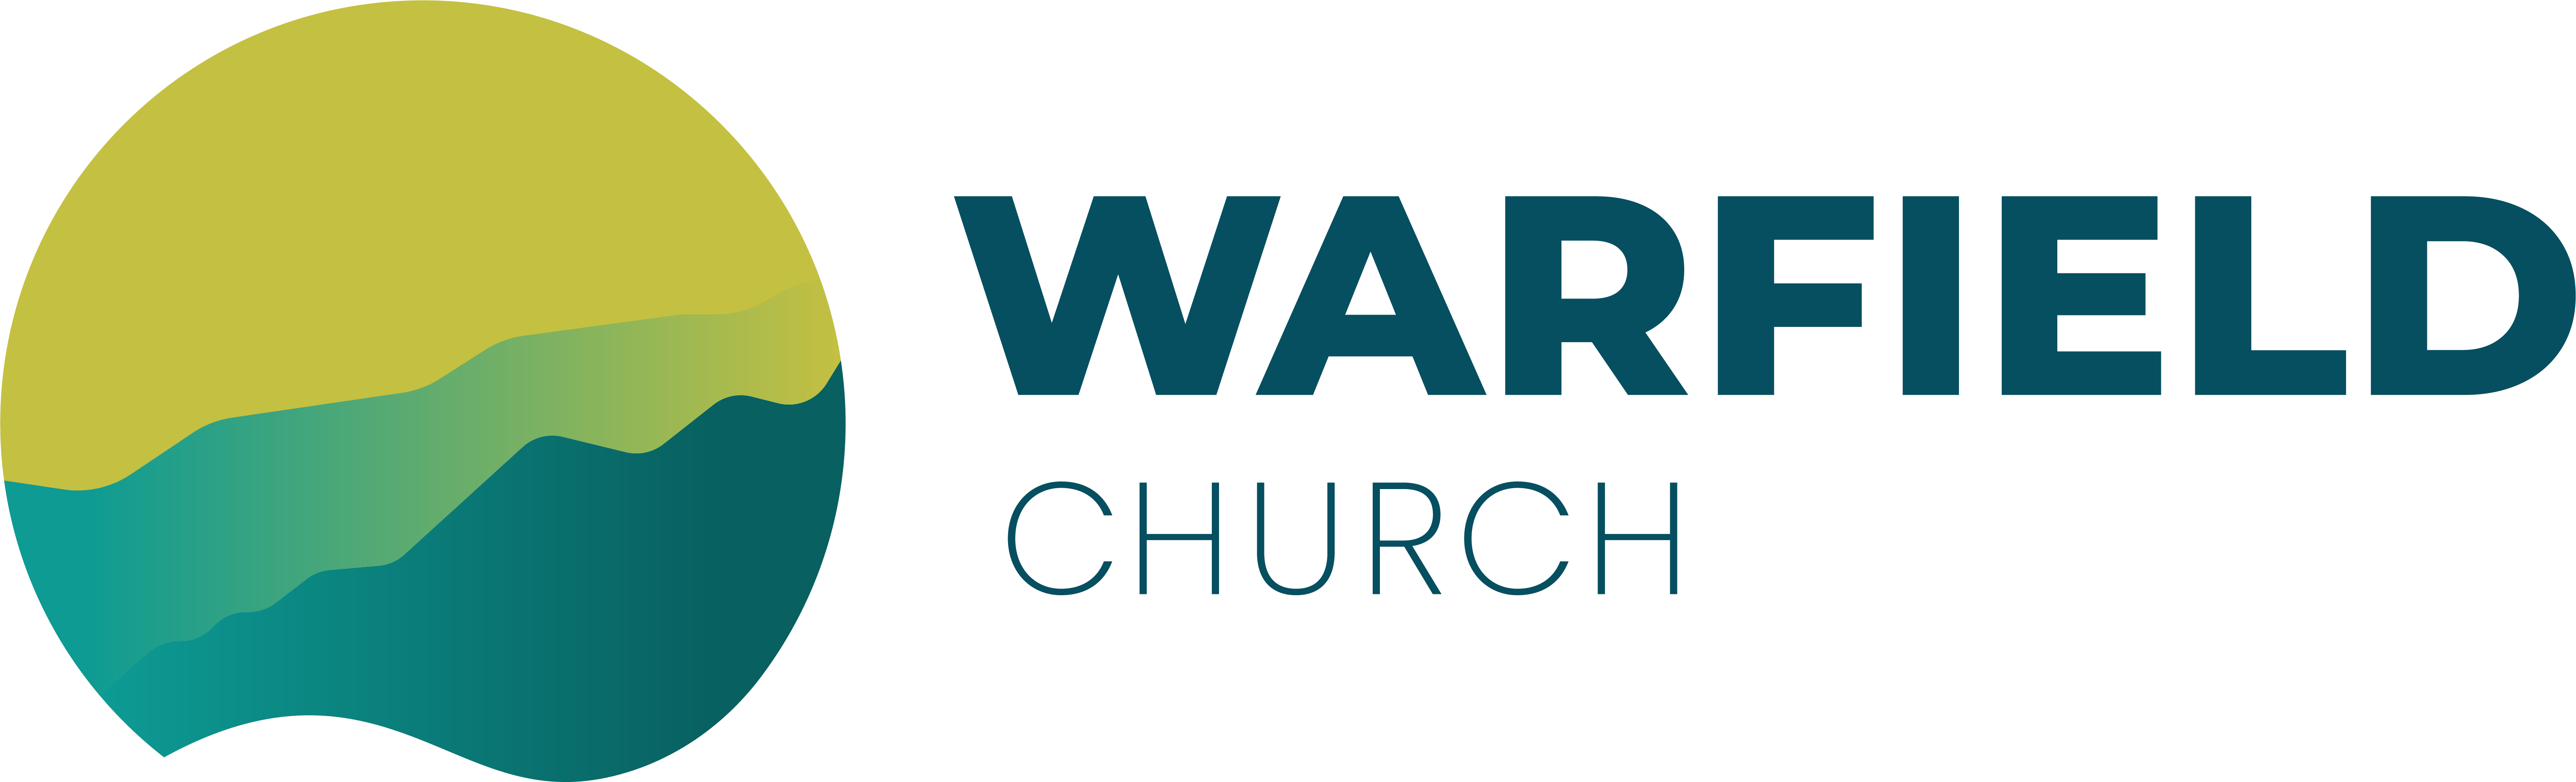 Warfield Church